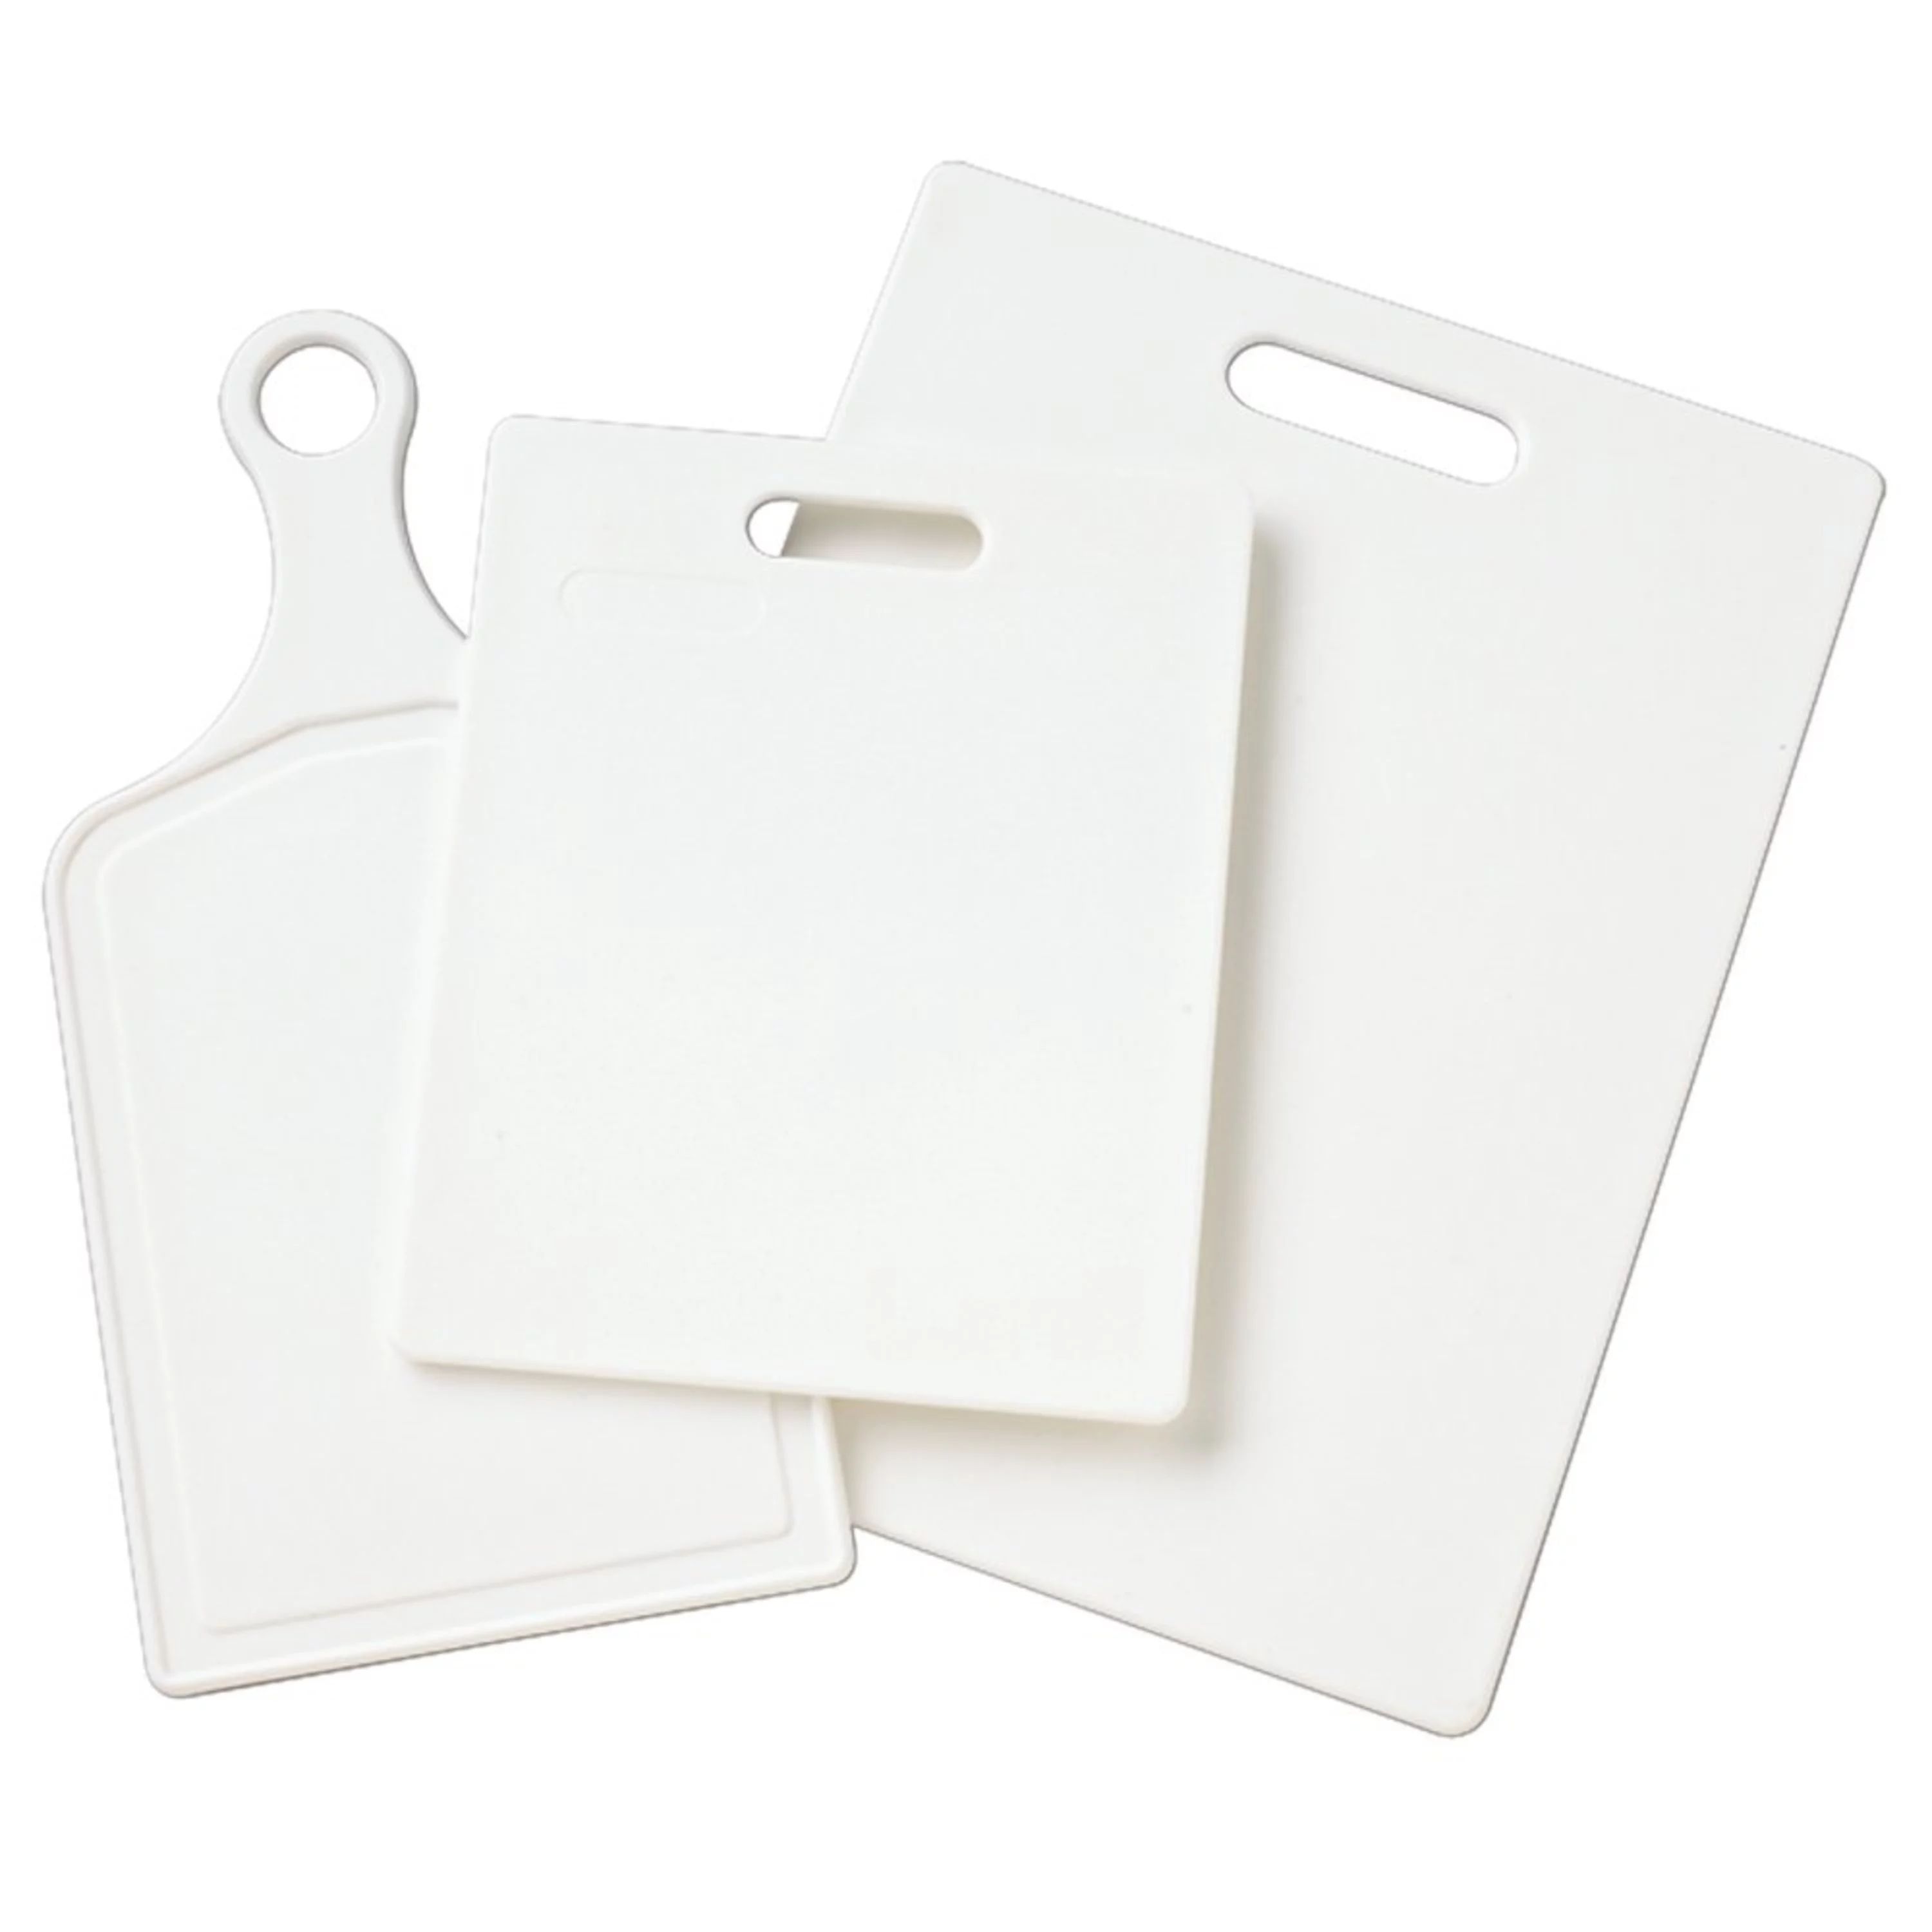 Farberware 3-piece Essential Poly Cutting Board Set | Walmart (US)